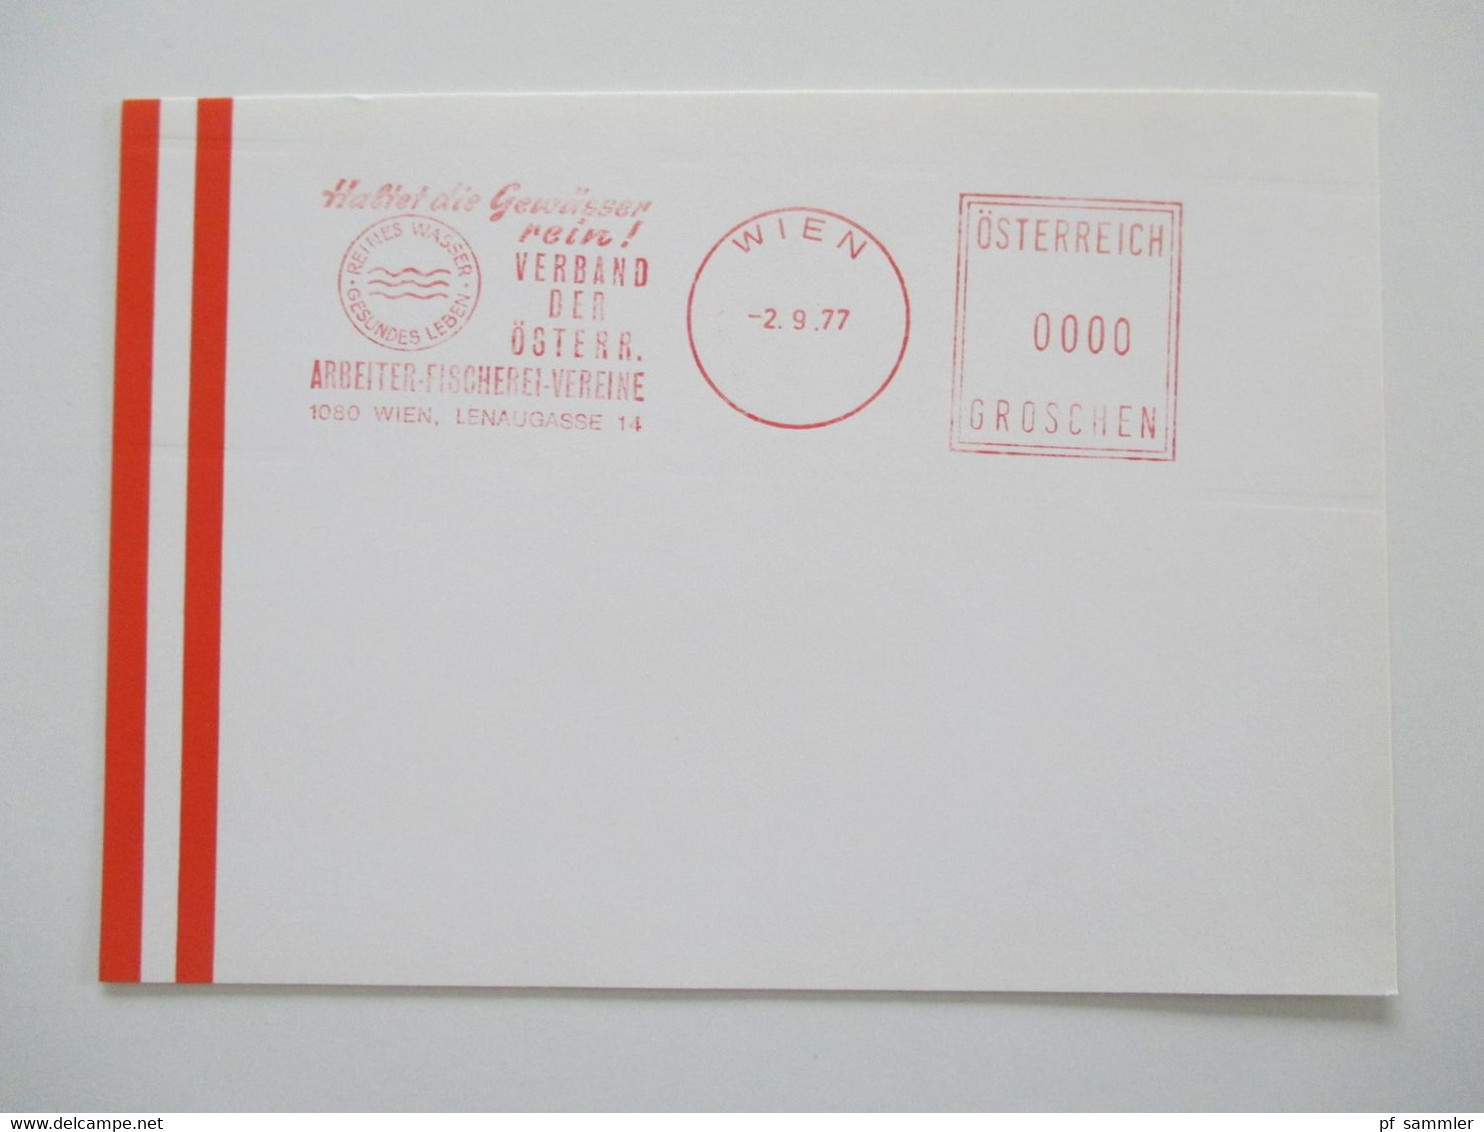 Österreich 1976 - 78 Freistempel Mit Wert 0000 Groschen Insgesamt 29 Stempelbelege / Blanko Karten Alles Verschiedene St - Covers & Documents